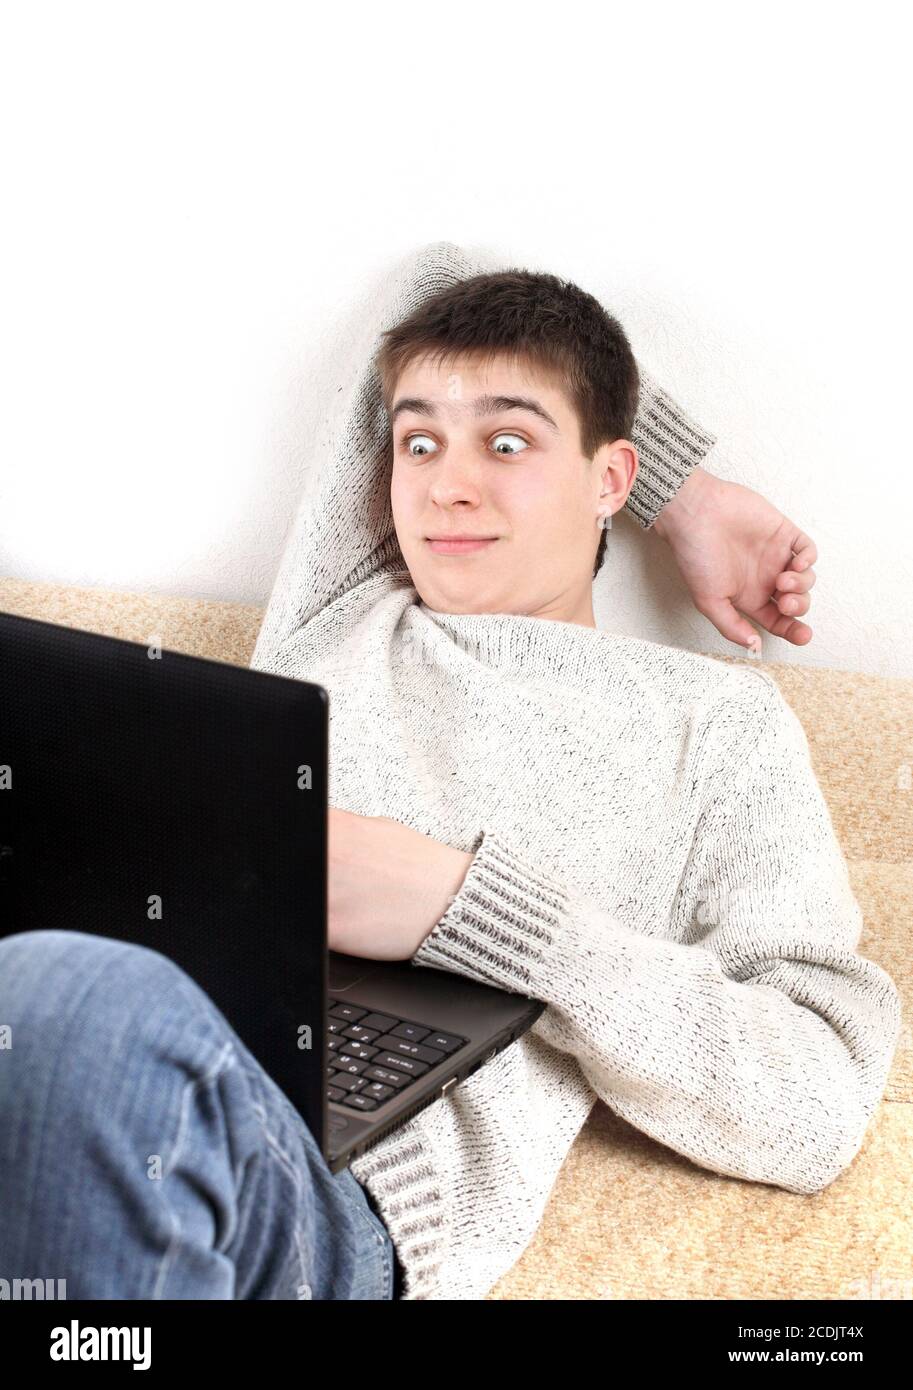 Adolescent surpris avec un ordinateur portable Banque D'Images